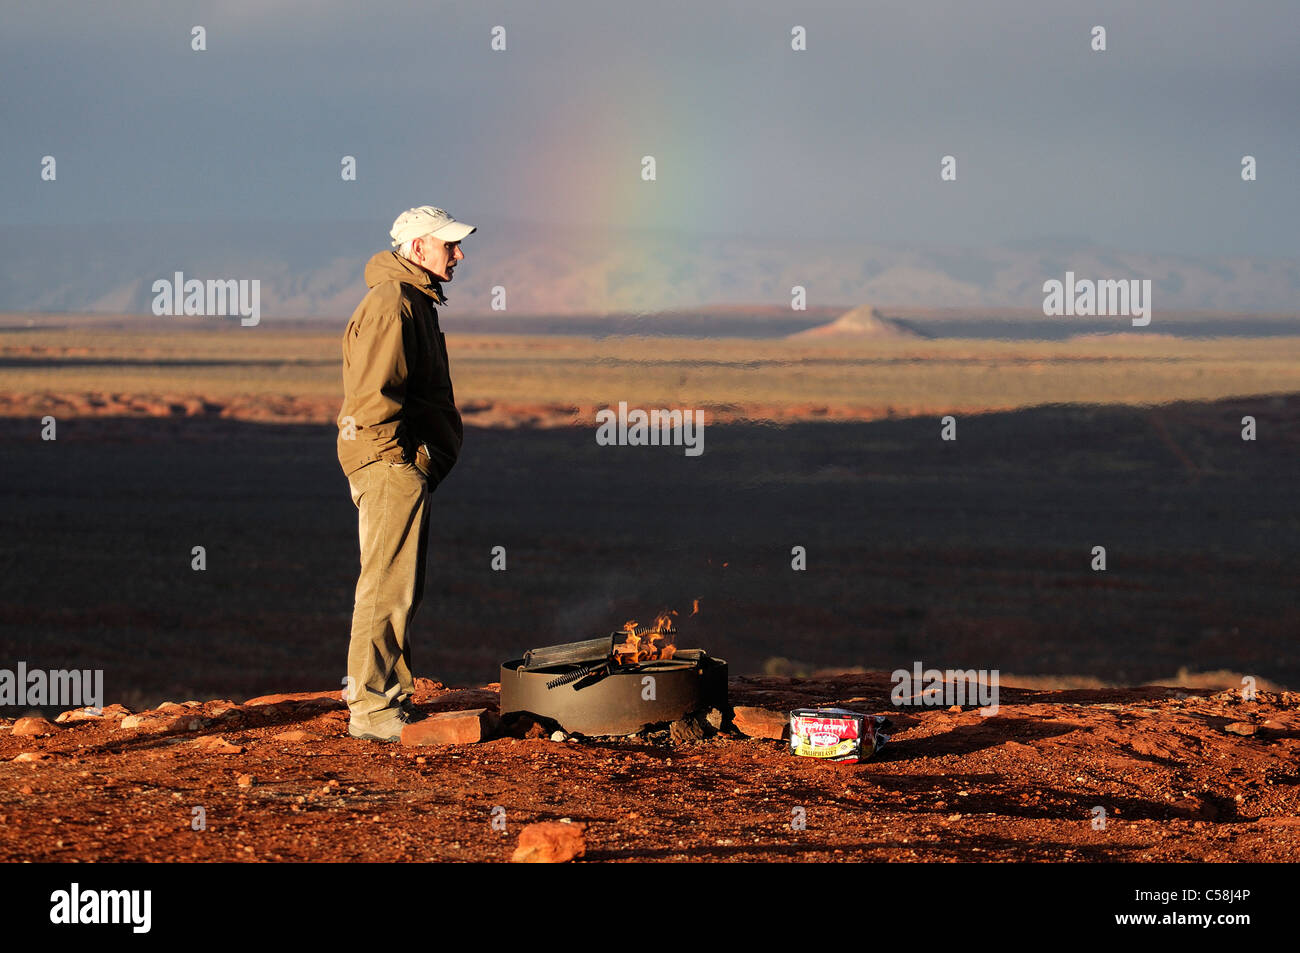 L'uomo, in piedi, una buca per il fuoco, Monument Valley Navajo Tribal Park, Arizona, Utah, Stati Uniti d'America, Stati Uniti, America, Foto Stock